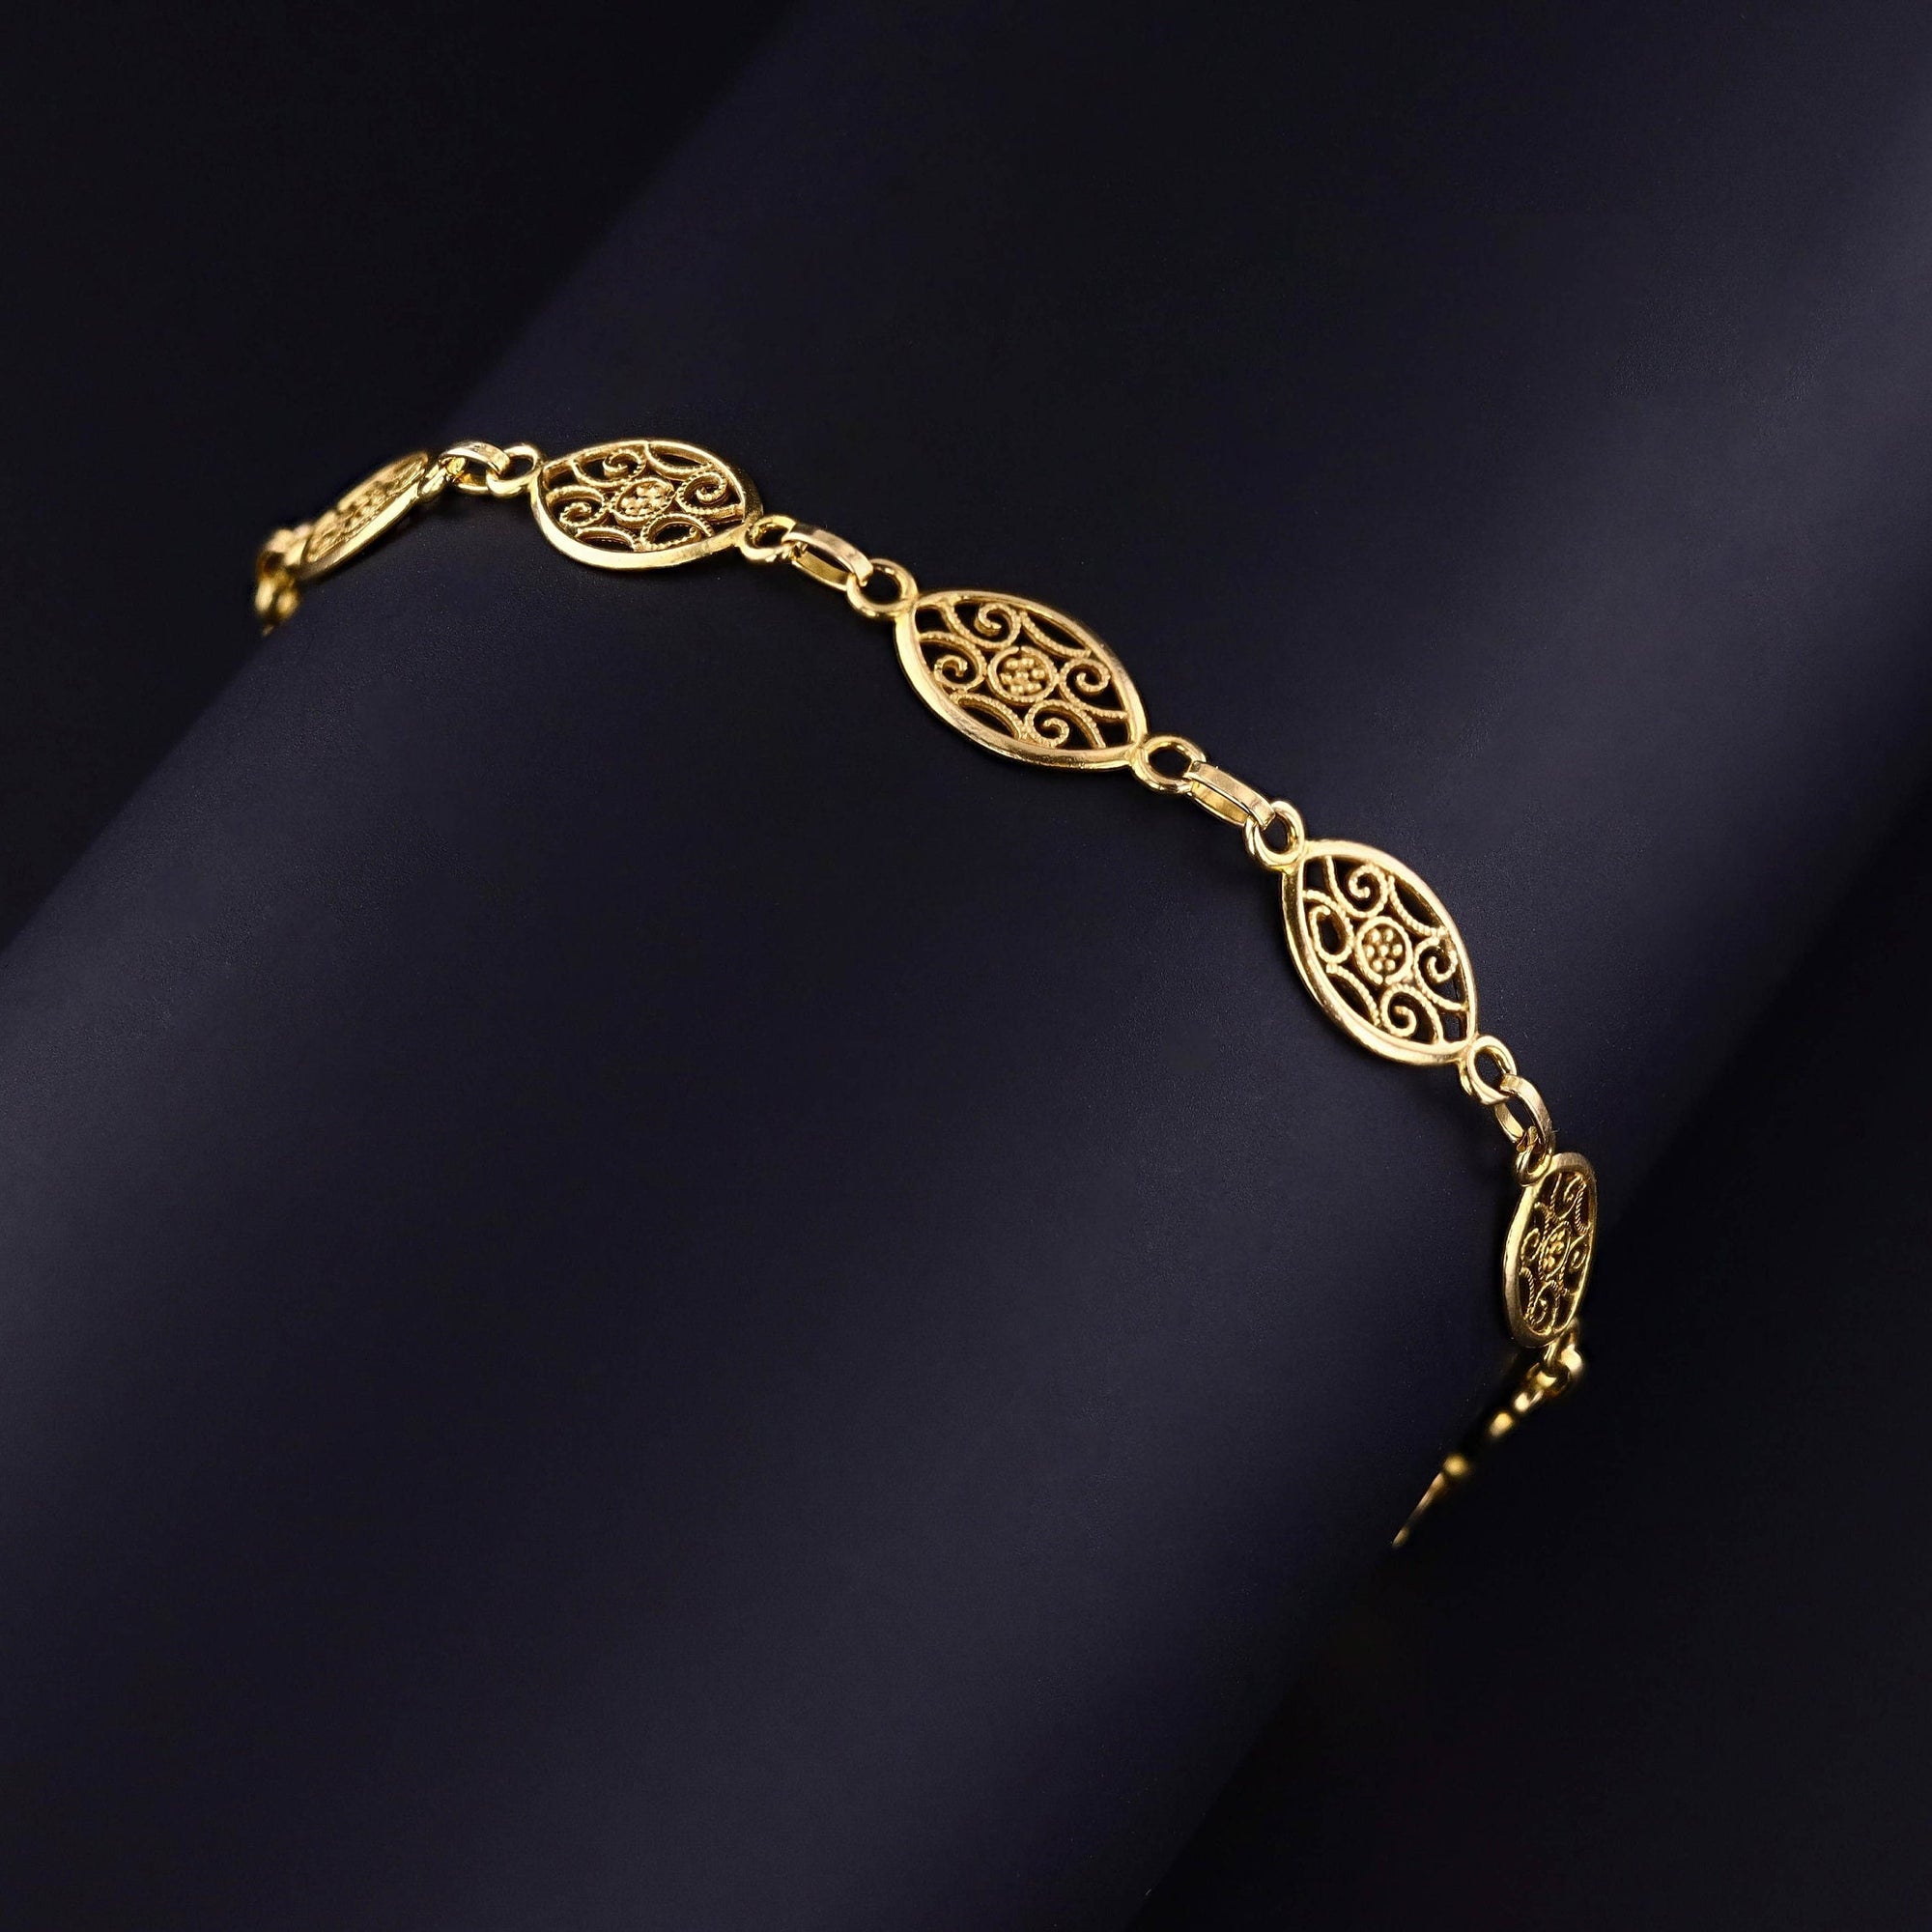 Vintage Filigree Bracelet of 14k Gold